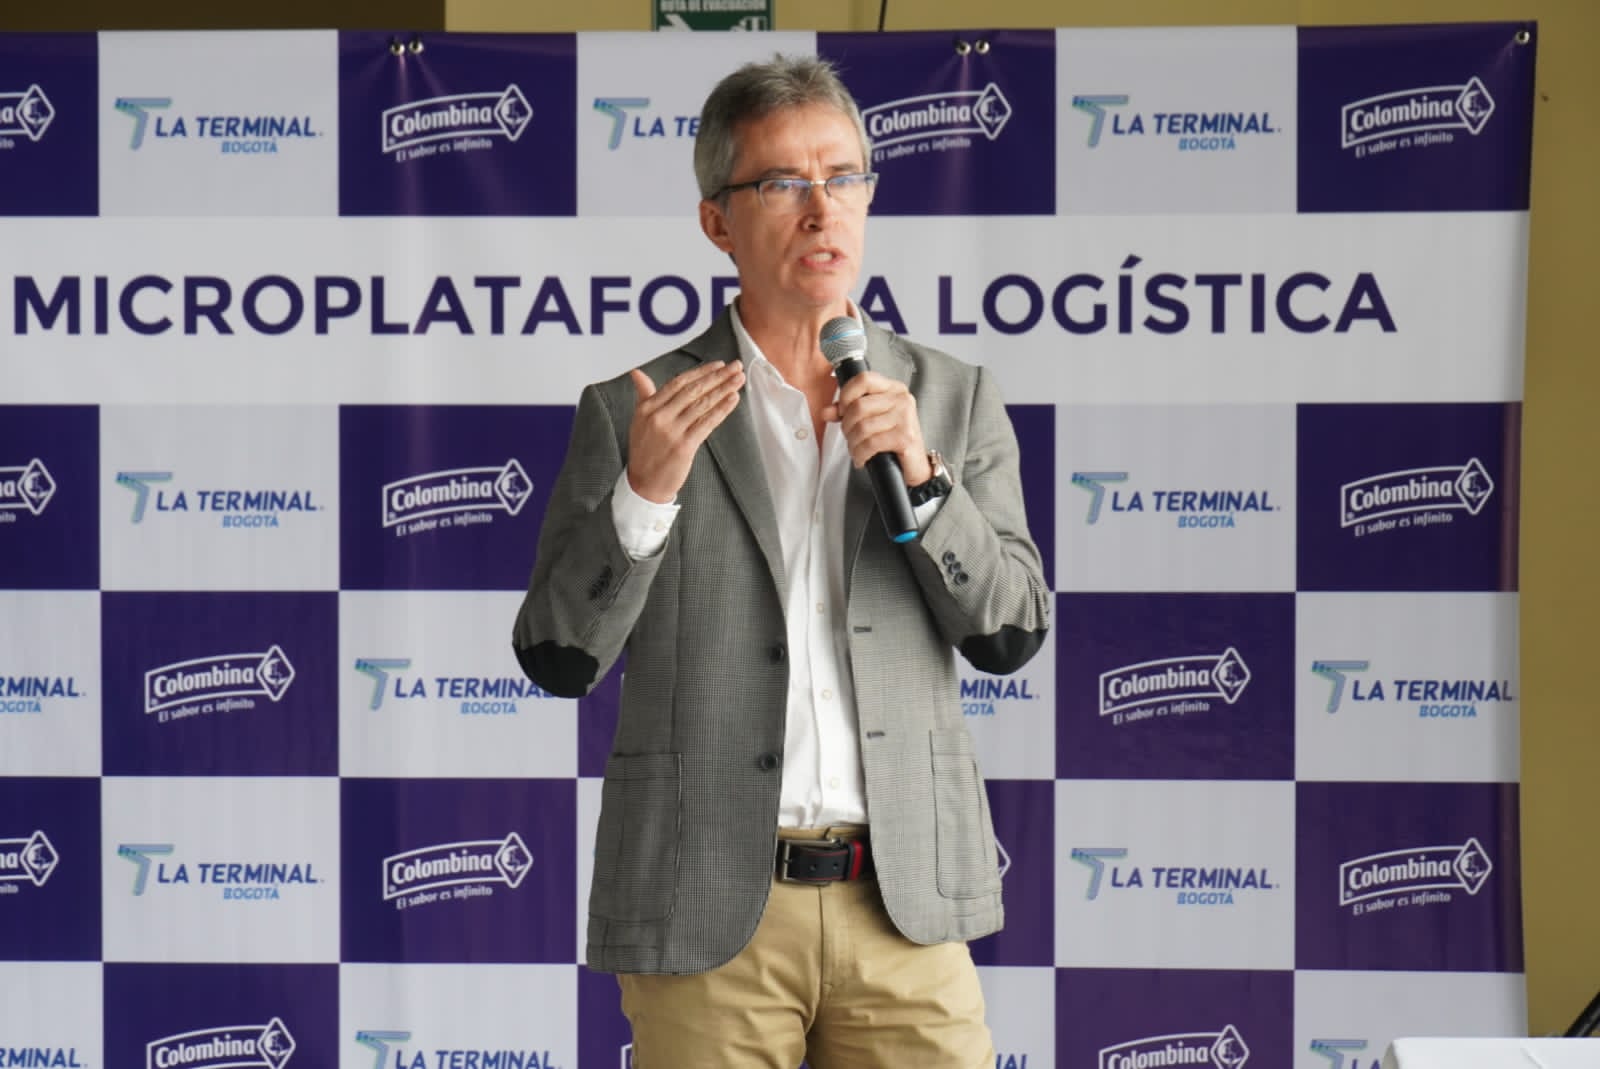 Terminal de Transporte de Bogotá y el Grupo Empresarial Colombina lanzan nueva microplataforma logística